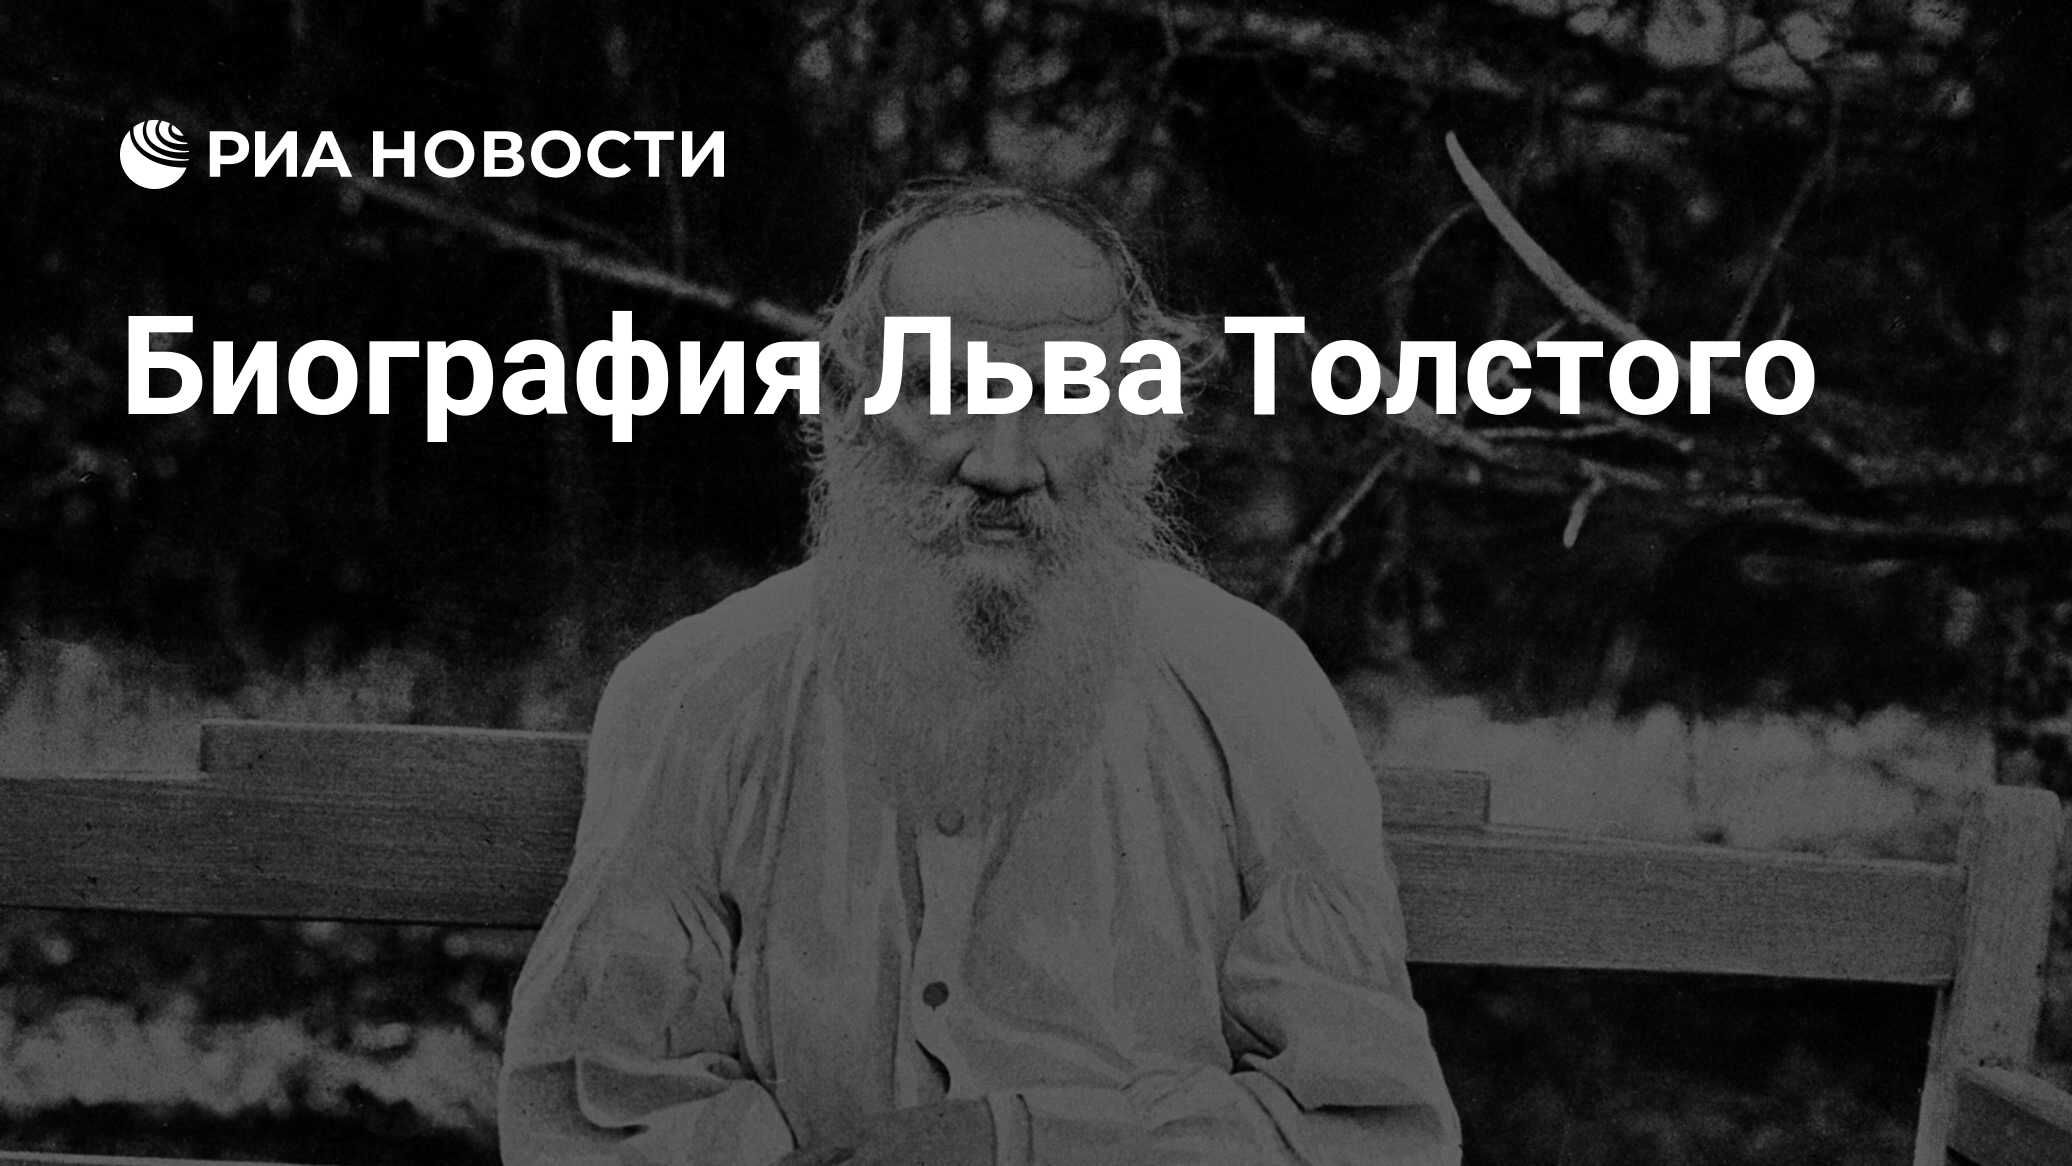 Биография Льва Толстого - РИА Новости, 01.03.2020